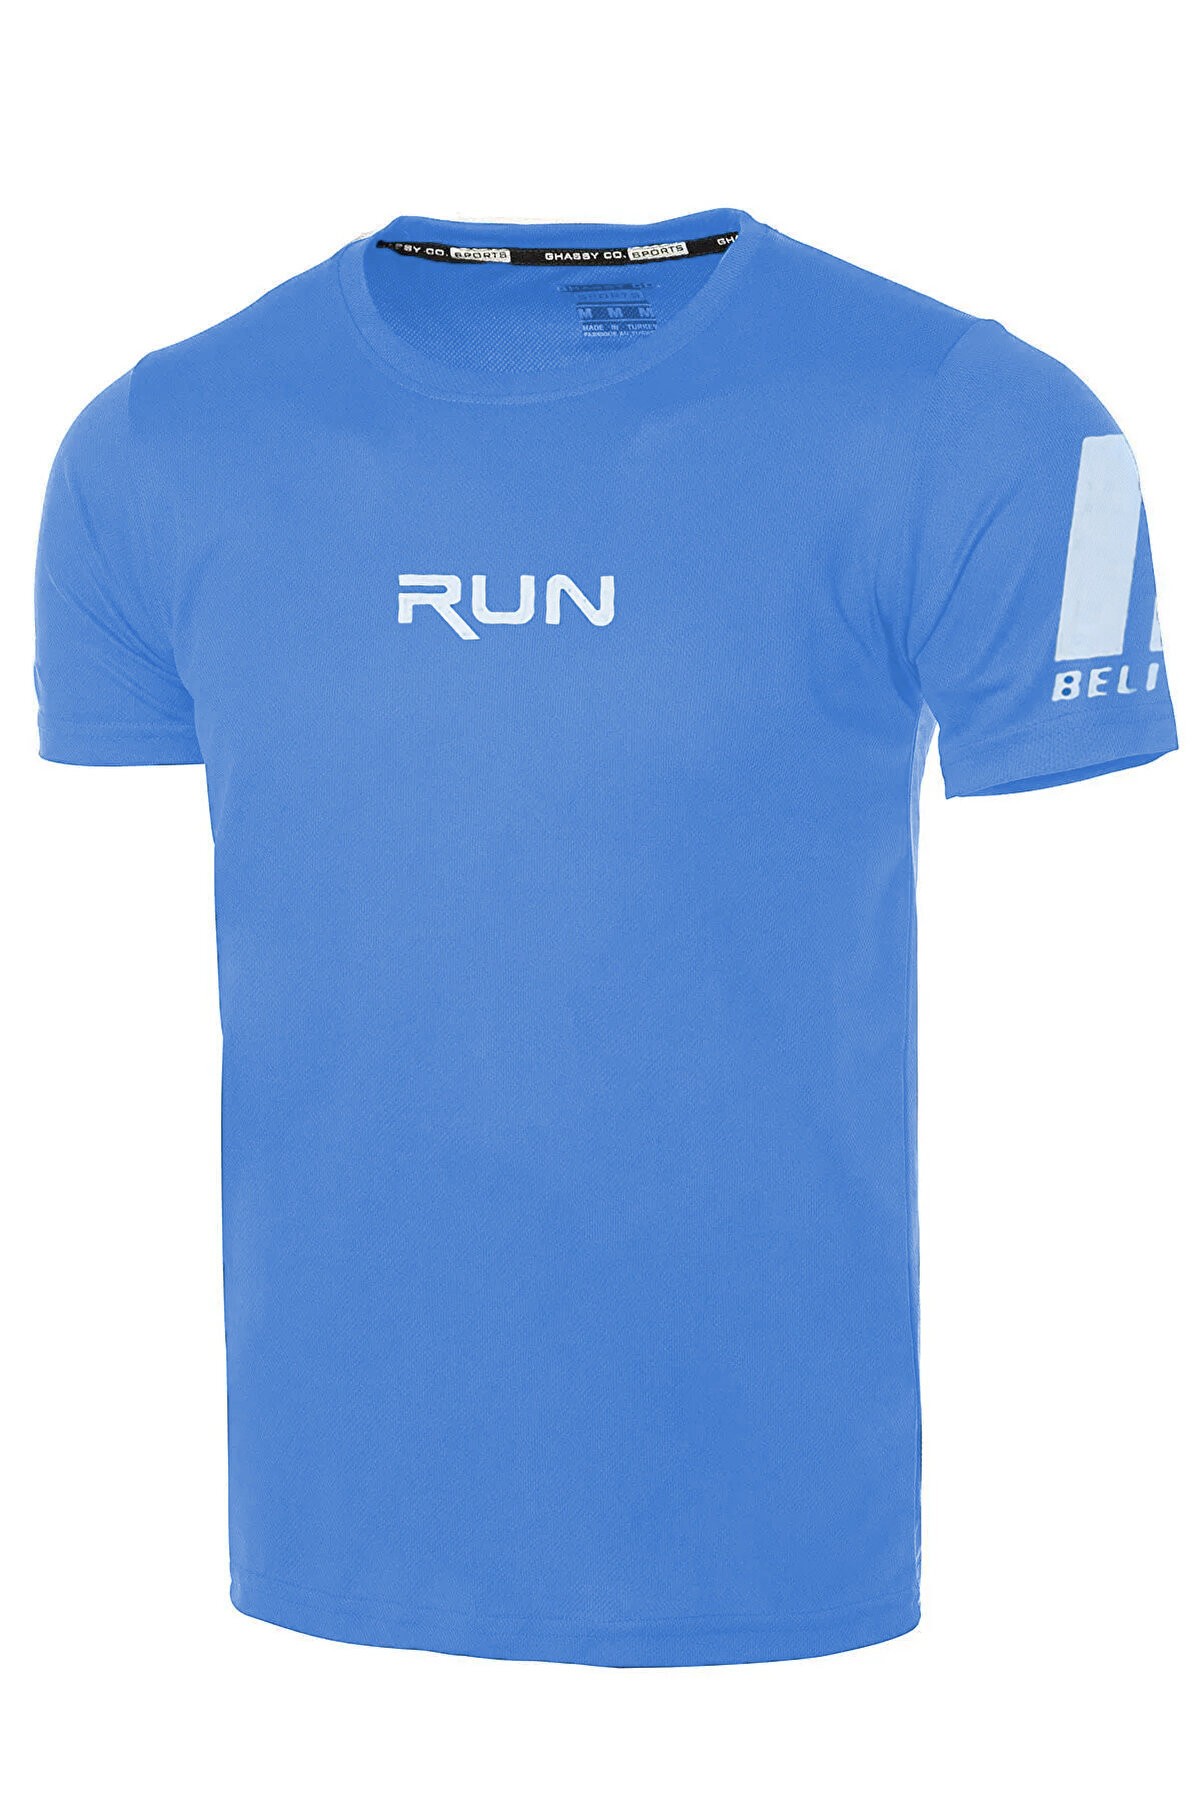 Ghassy Co Ghassy Co. Erkek Nem Emici Hızlı Kuruma Performans Running Spor T-shirt - Açık Mavi